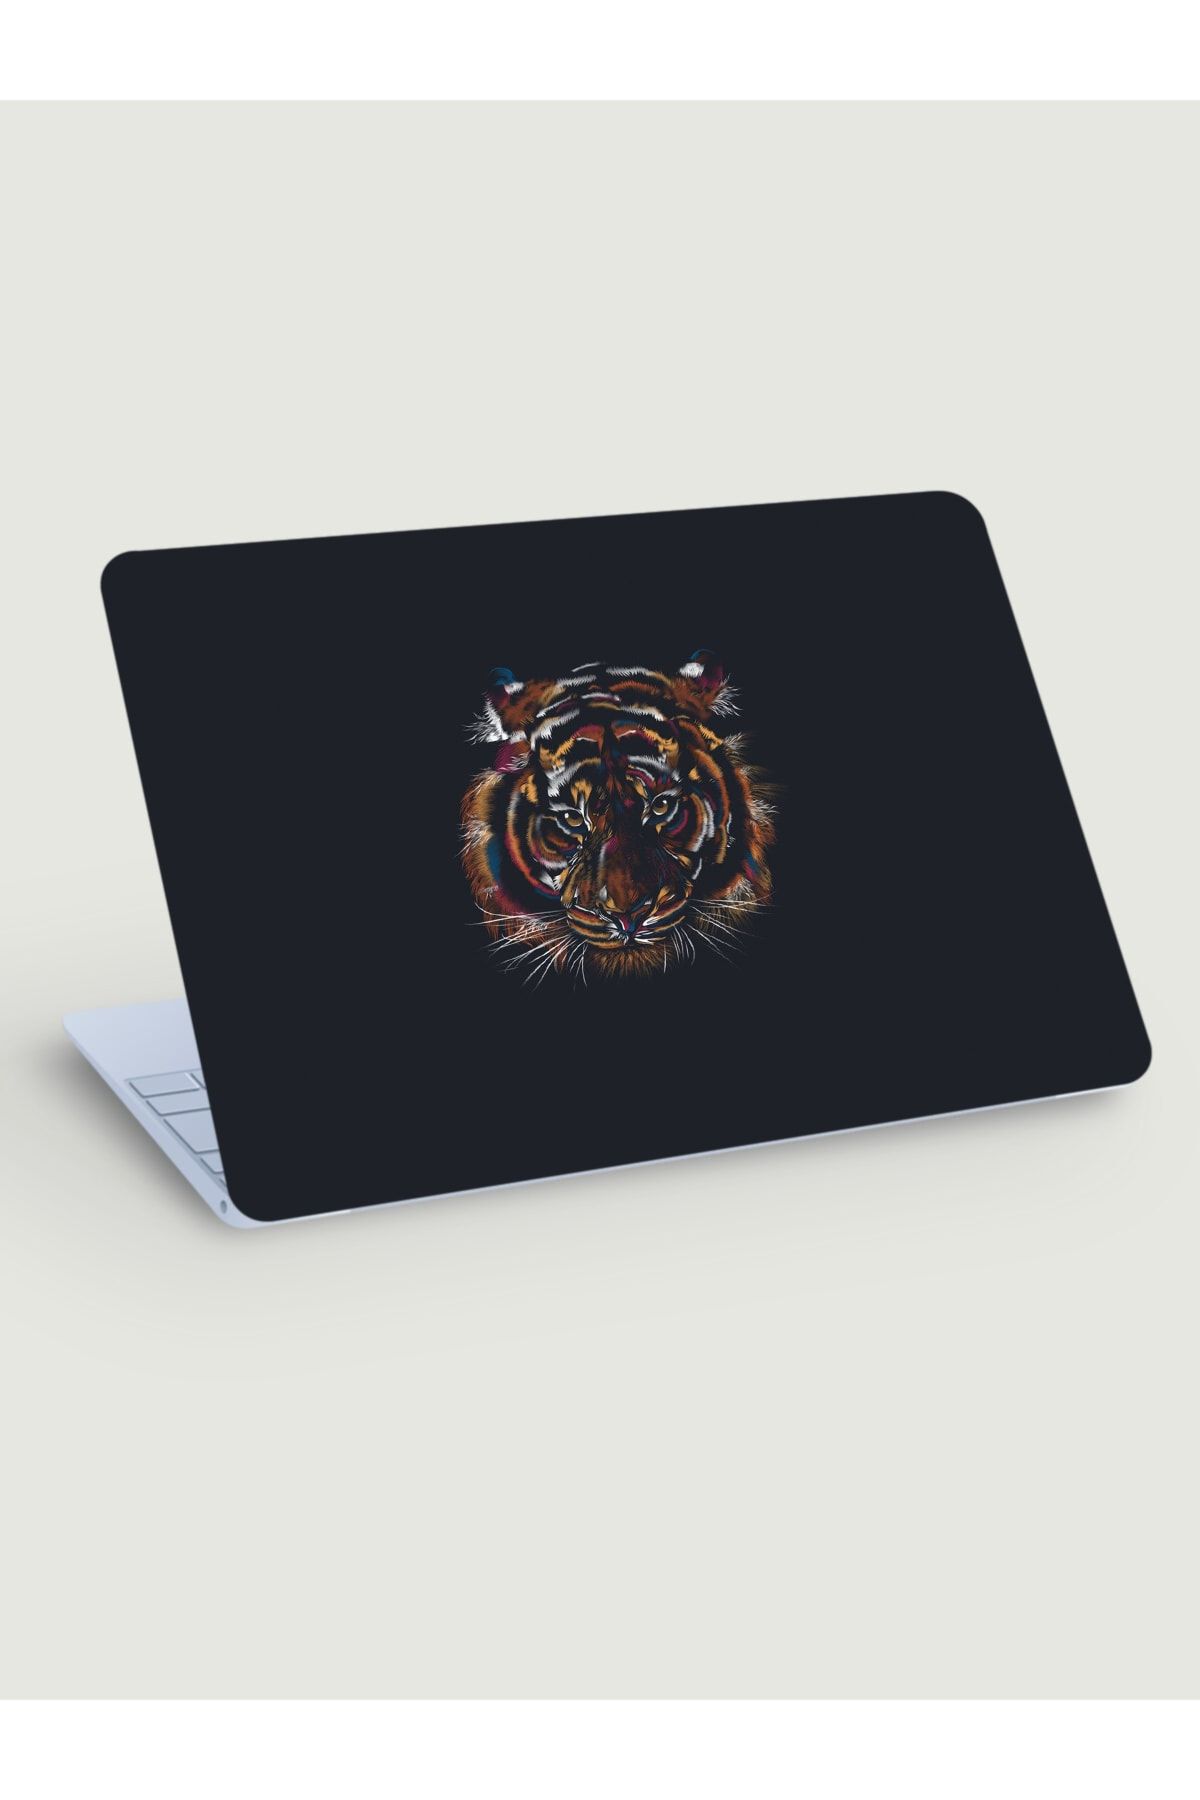 KT Decor Siyah Fon Kaplan Minimal Laptop Sticker